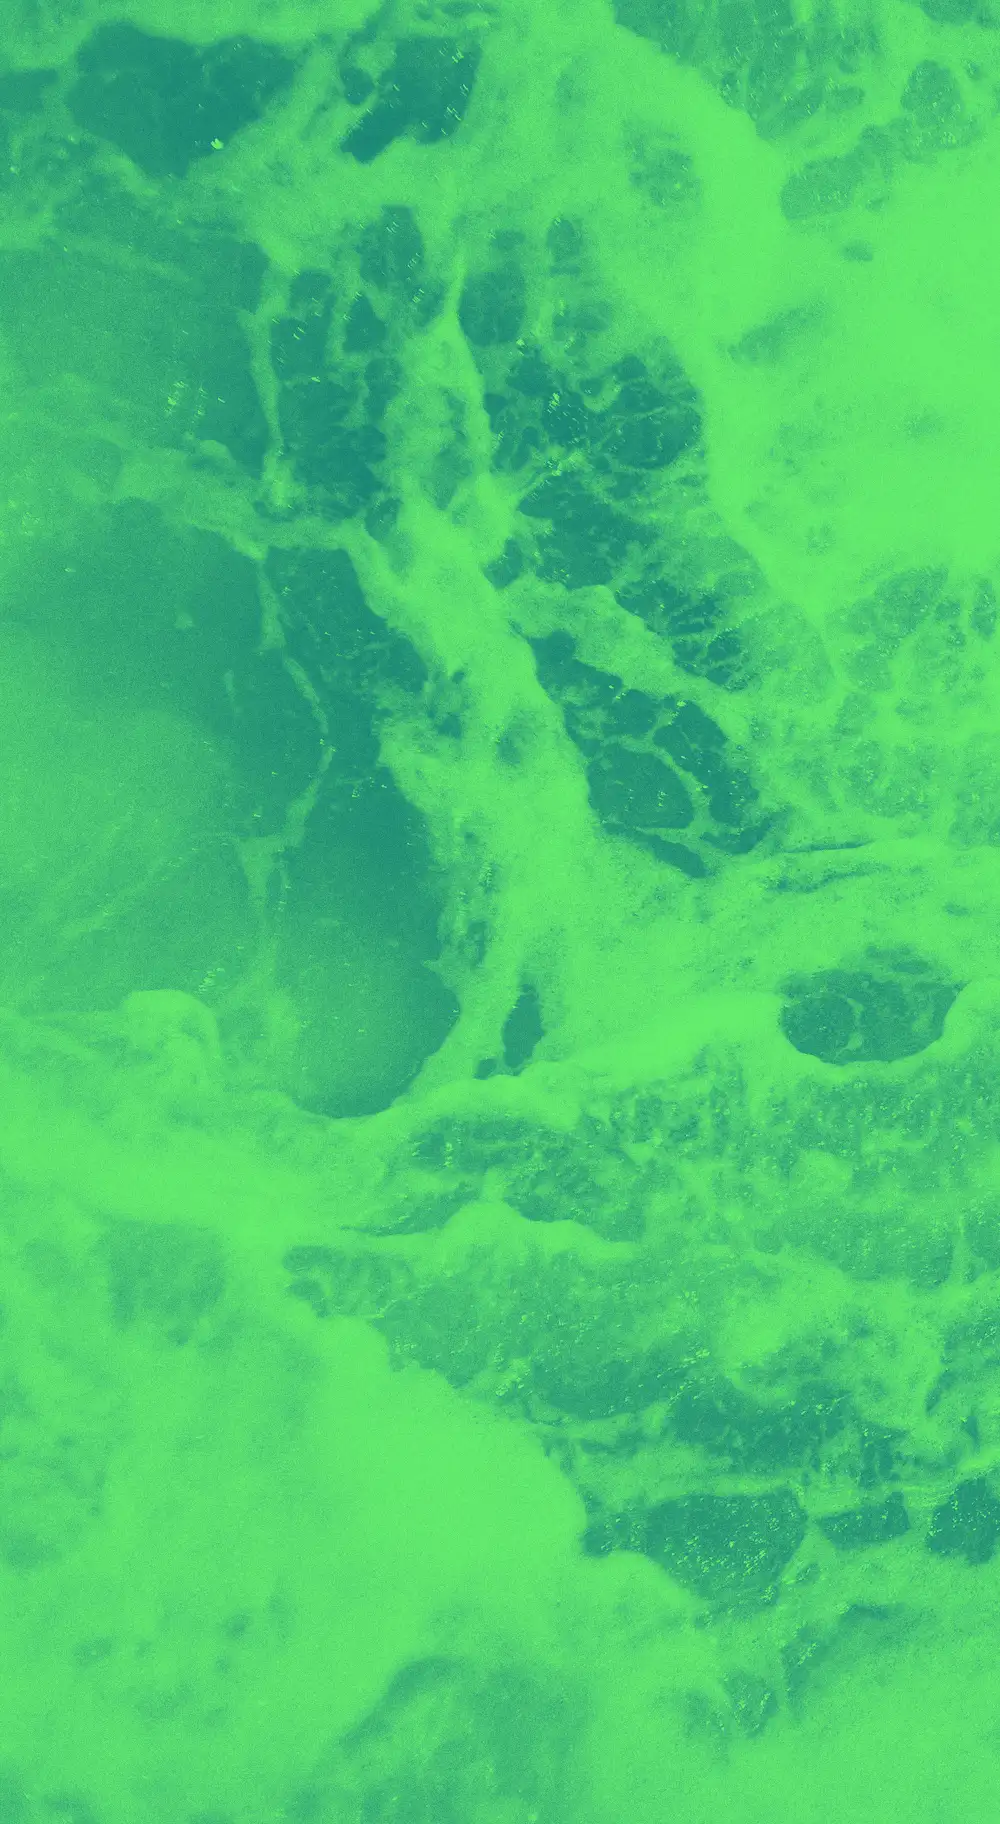 Green waves textural image